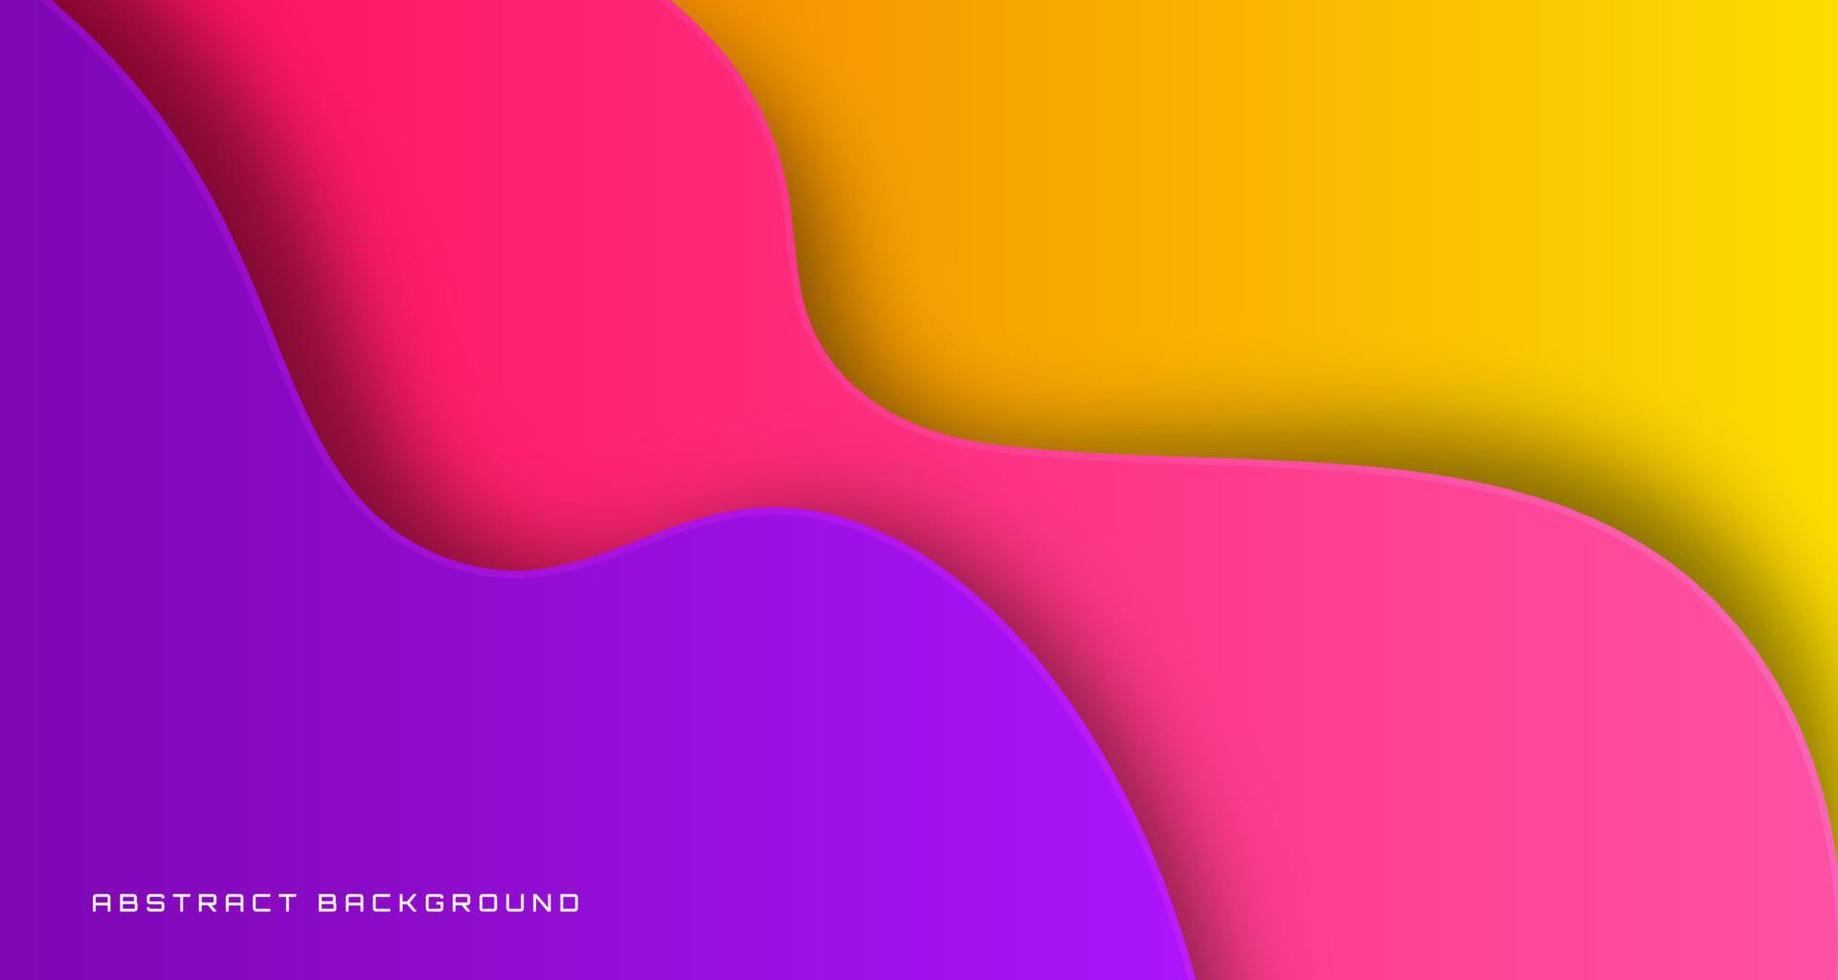 Camada de sobreposição de fundo abstrato geométrico rosa amarelo 3d no espaço brilhante com decoração de ondas. conceito de estilo ondulado de elemento de design gráfico para banner, folheto, cartão, capa de brochura ou página inicial vetor